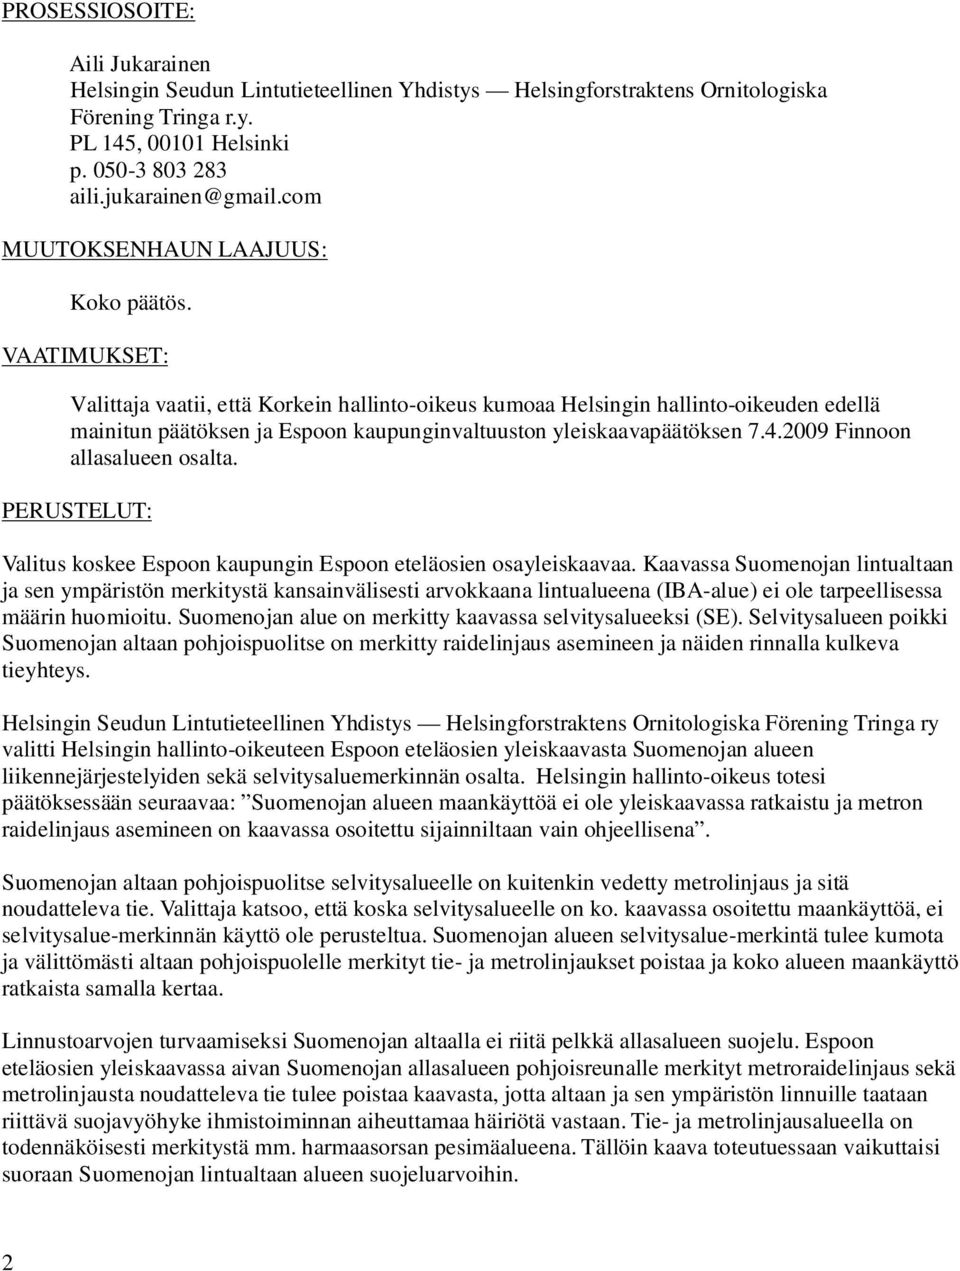 VAATIMUKSET: Valittaja vaatii, että Korkein hallinto-oikeus kumoaa Helsingin hallinto-oikeuden edellä mainitun päätöksen ja Espoon kaupunginvaltuuston yleiskaavapäätöksen 7.4.